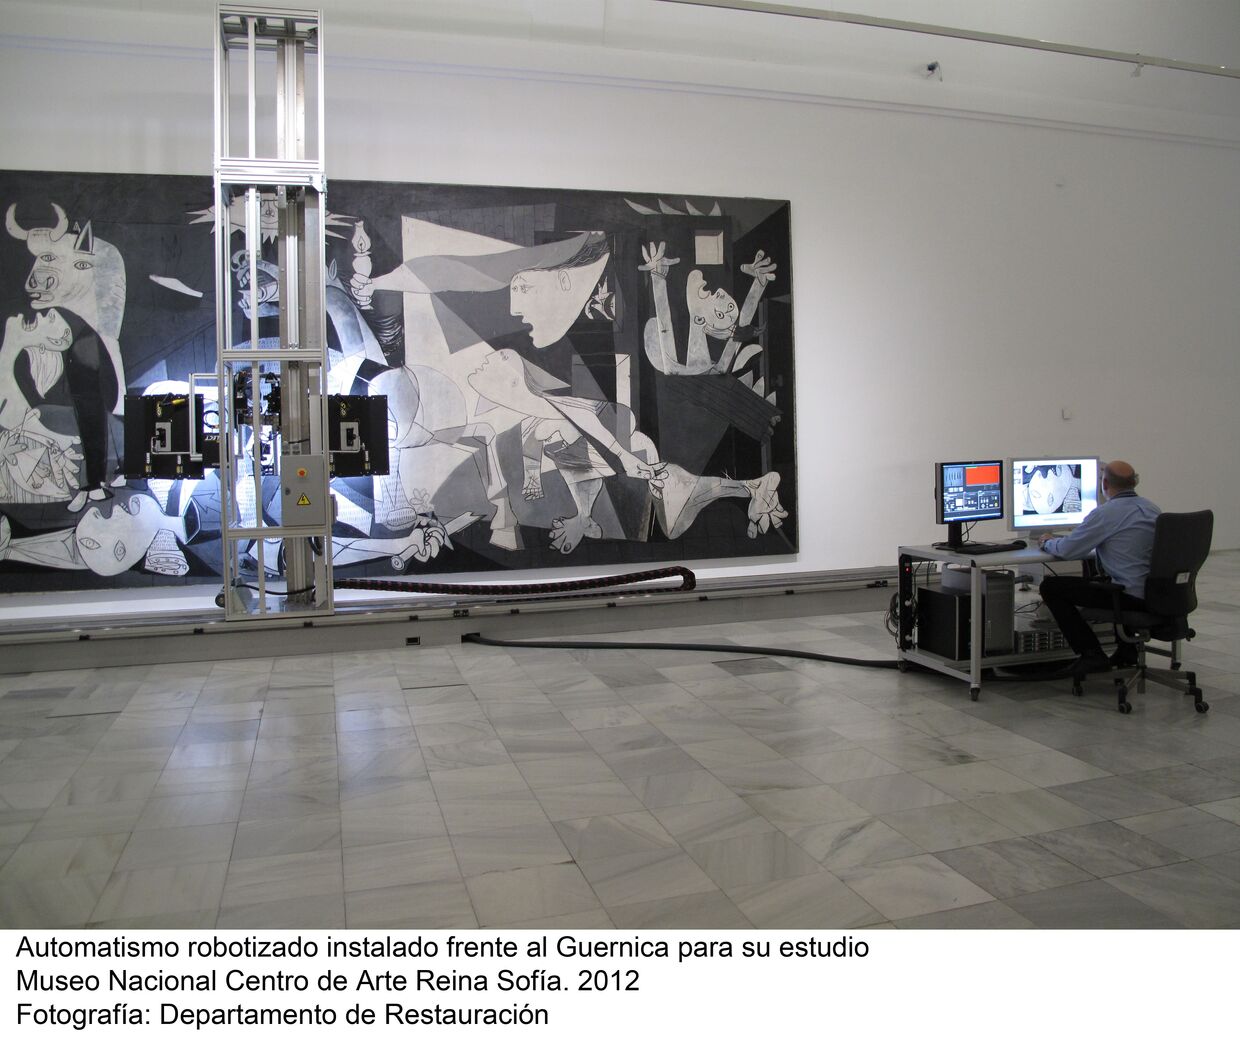 Мадридский музей королевы Софии со следующей недели приступает к детальной фотосъемке картины Пикассо Герника при помощи специального робота